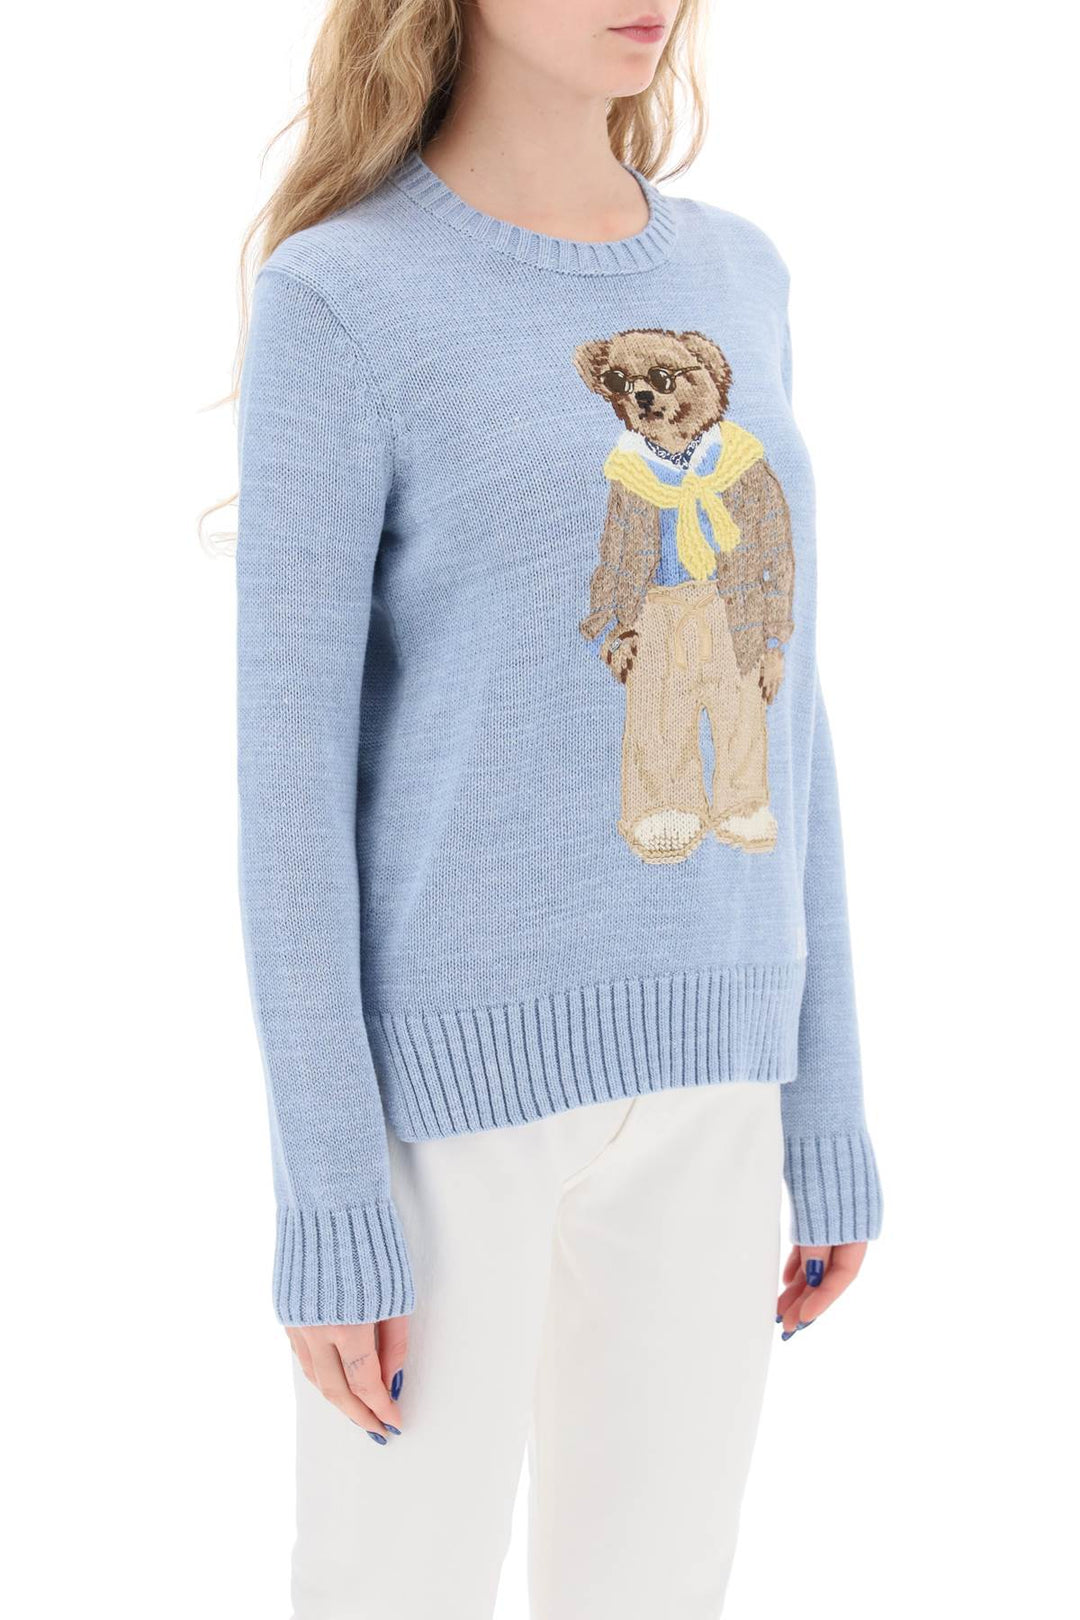 Pullover In Cotone Polo Bear - Polo Ralph Lauren - Donna